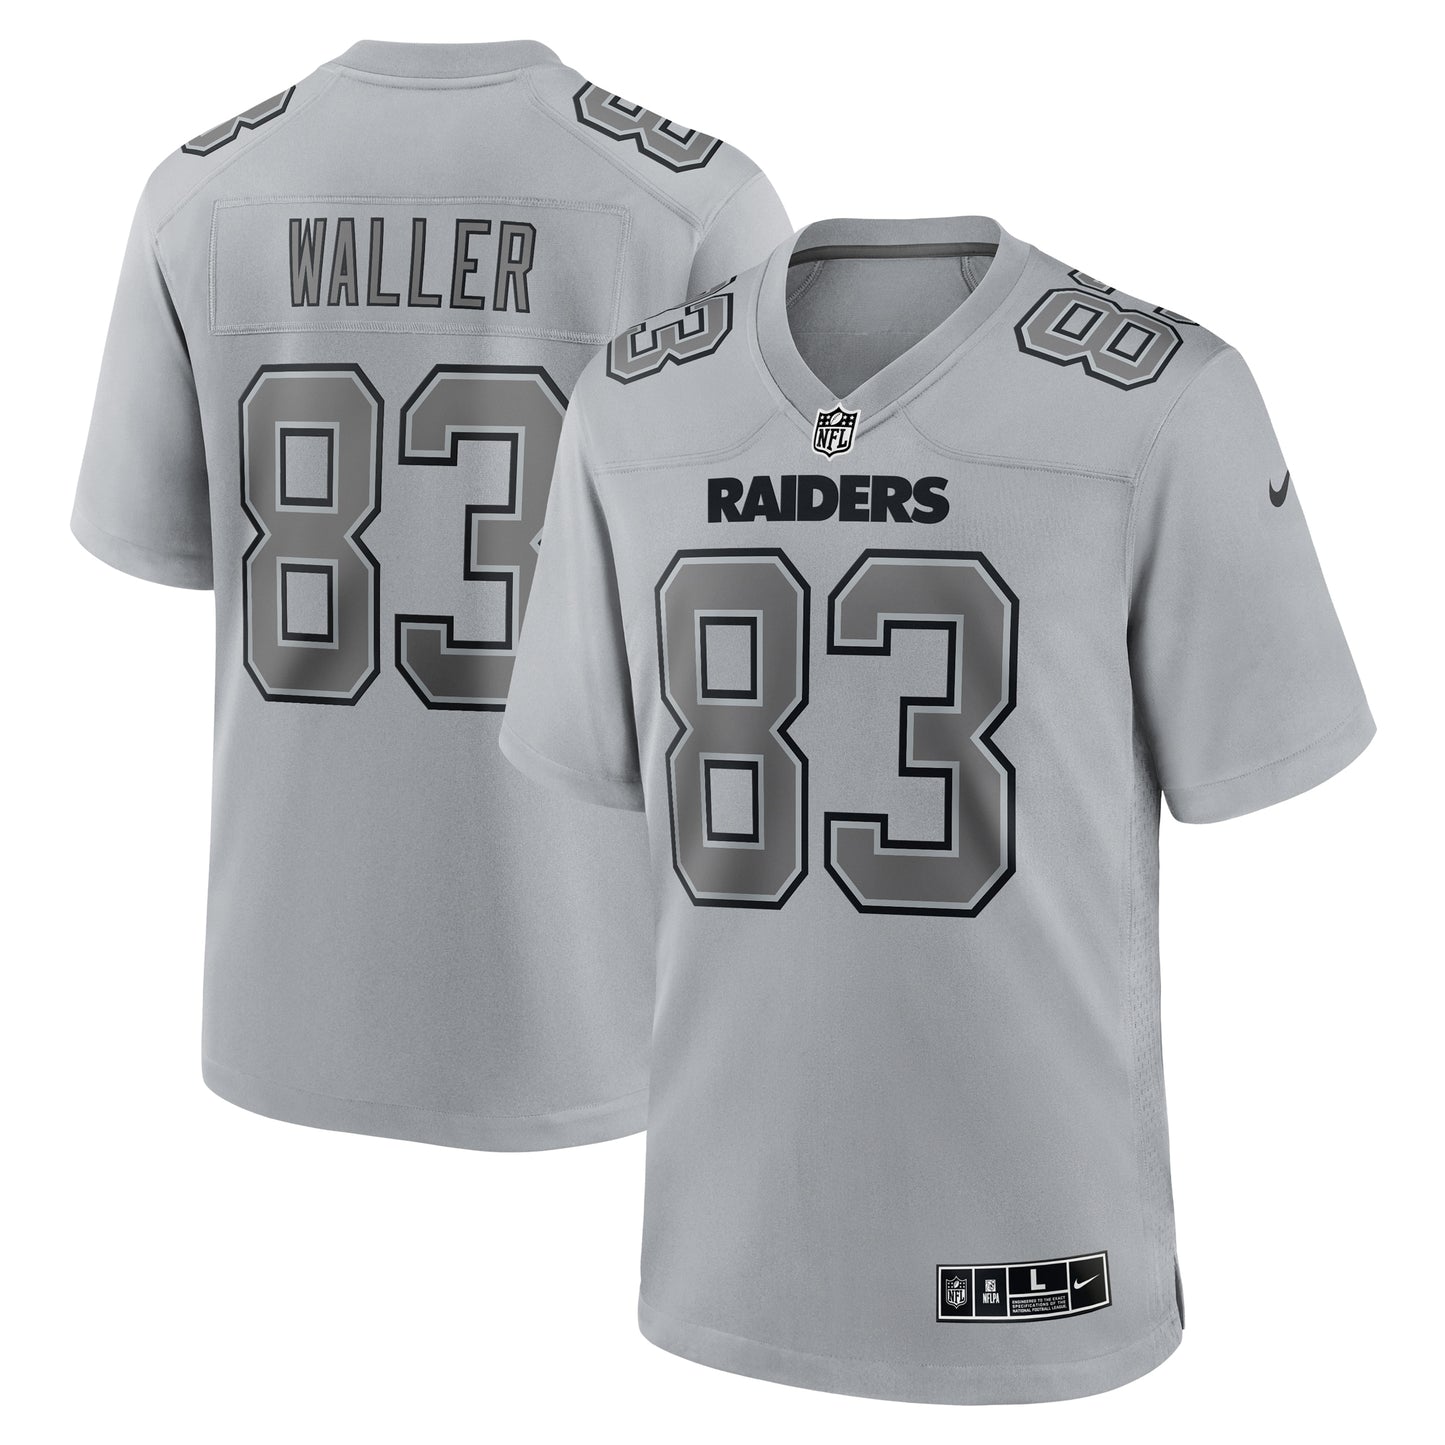 Darren Waller Las Vegas Raiders Nike Atmosphere Fashion Game Jersey - Gray